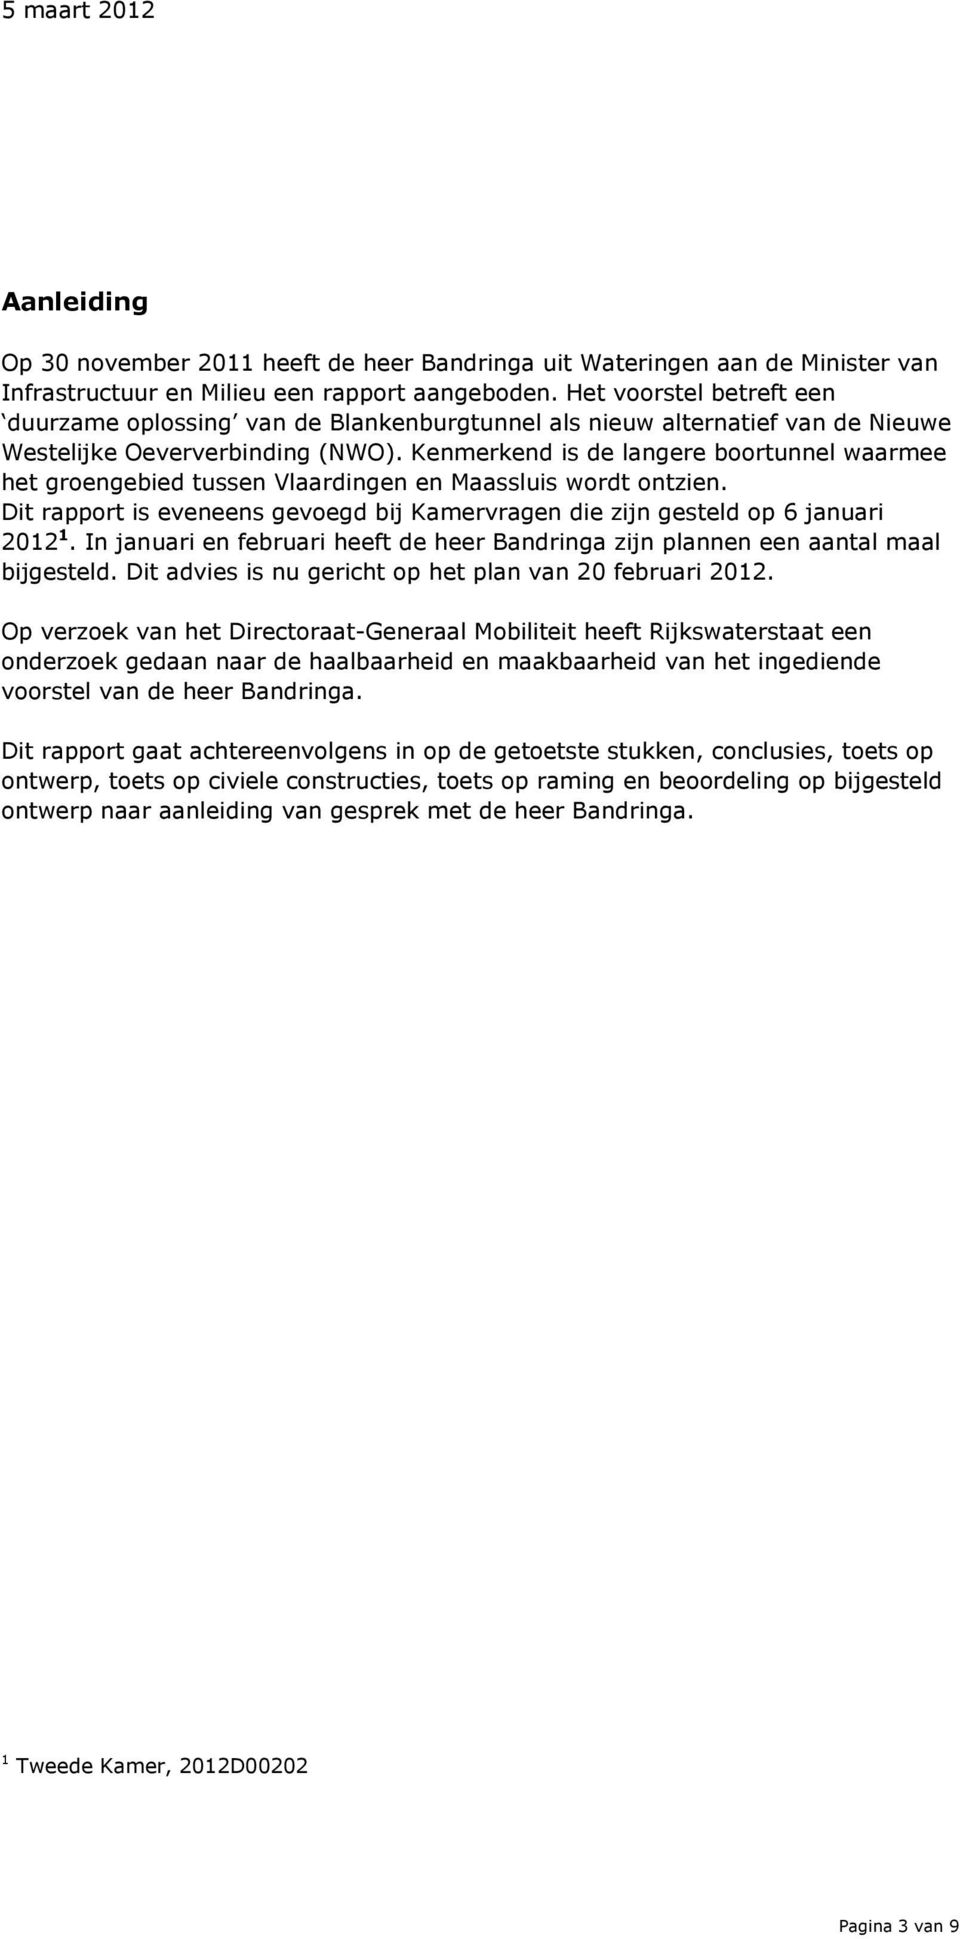 Kenmerkend is de langere boortunnel waarmee het groengebied tussen Vlaardingen en Maassluis wordt ontzien. Dit rapport is eveneens gevoegd bij Kamervragen die zijn gesteld op 6 januari 2012 1.